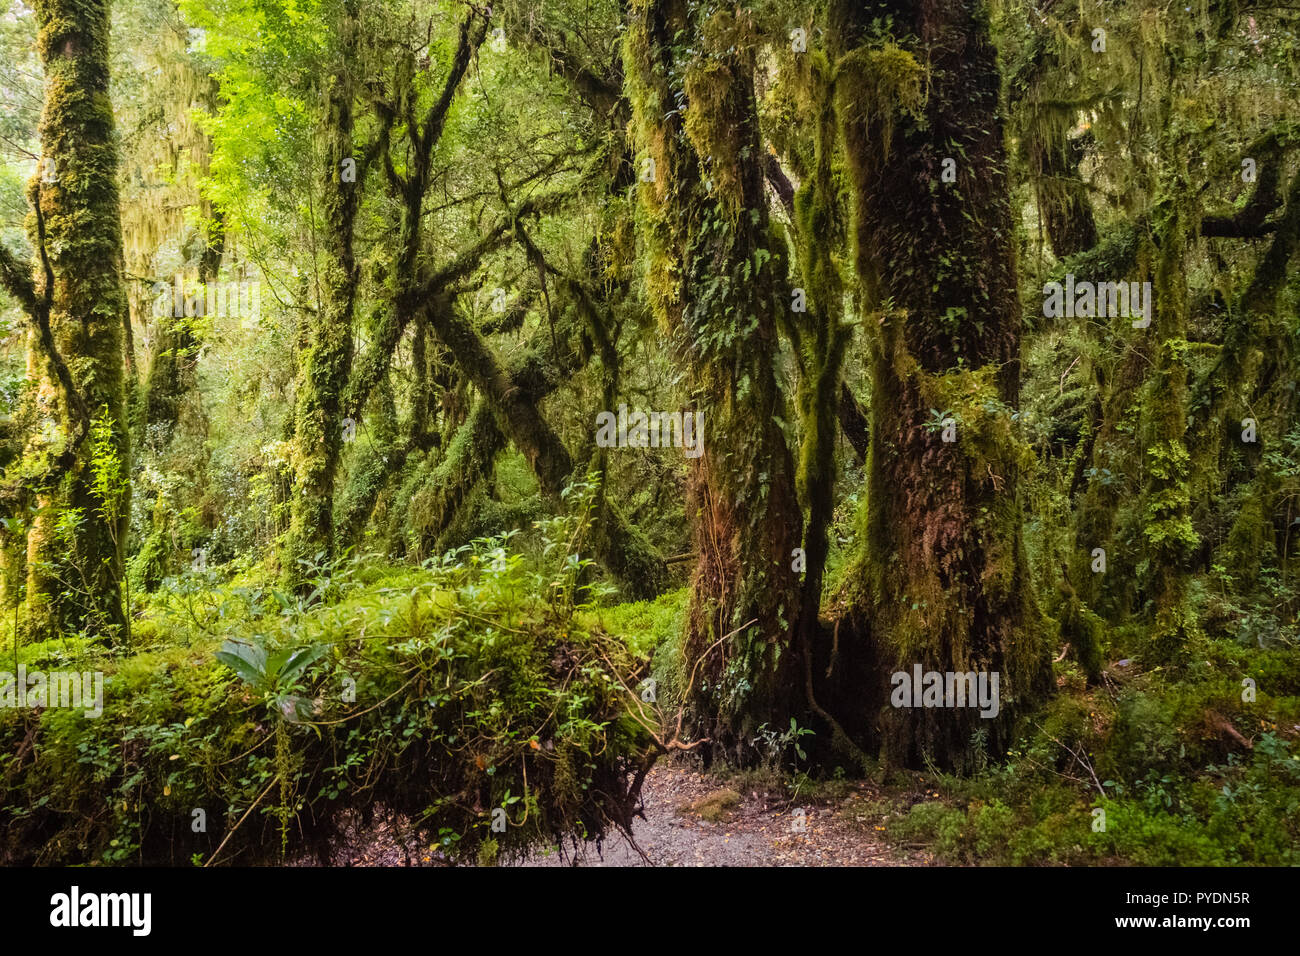 Detail Der verzauberte Wald in Carretera Austral, Bosque Encantado Chile Patagonien Stockfoto